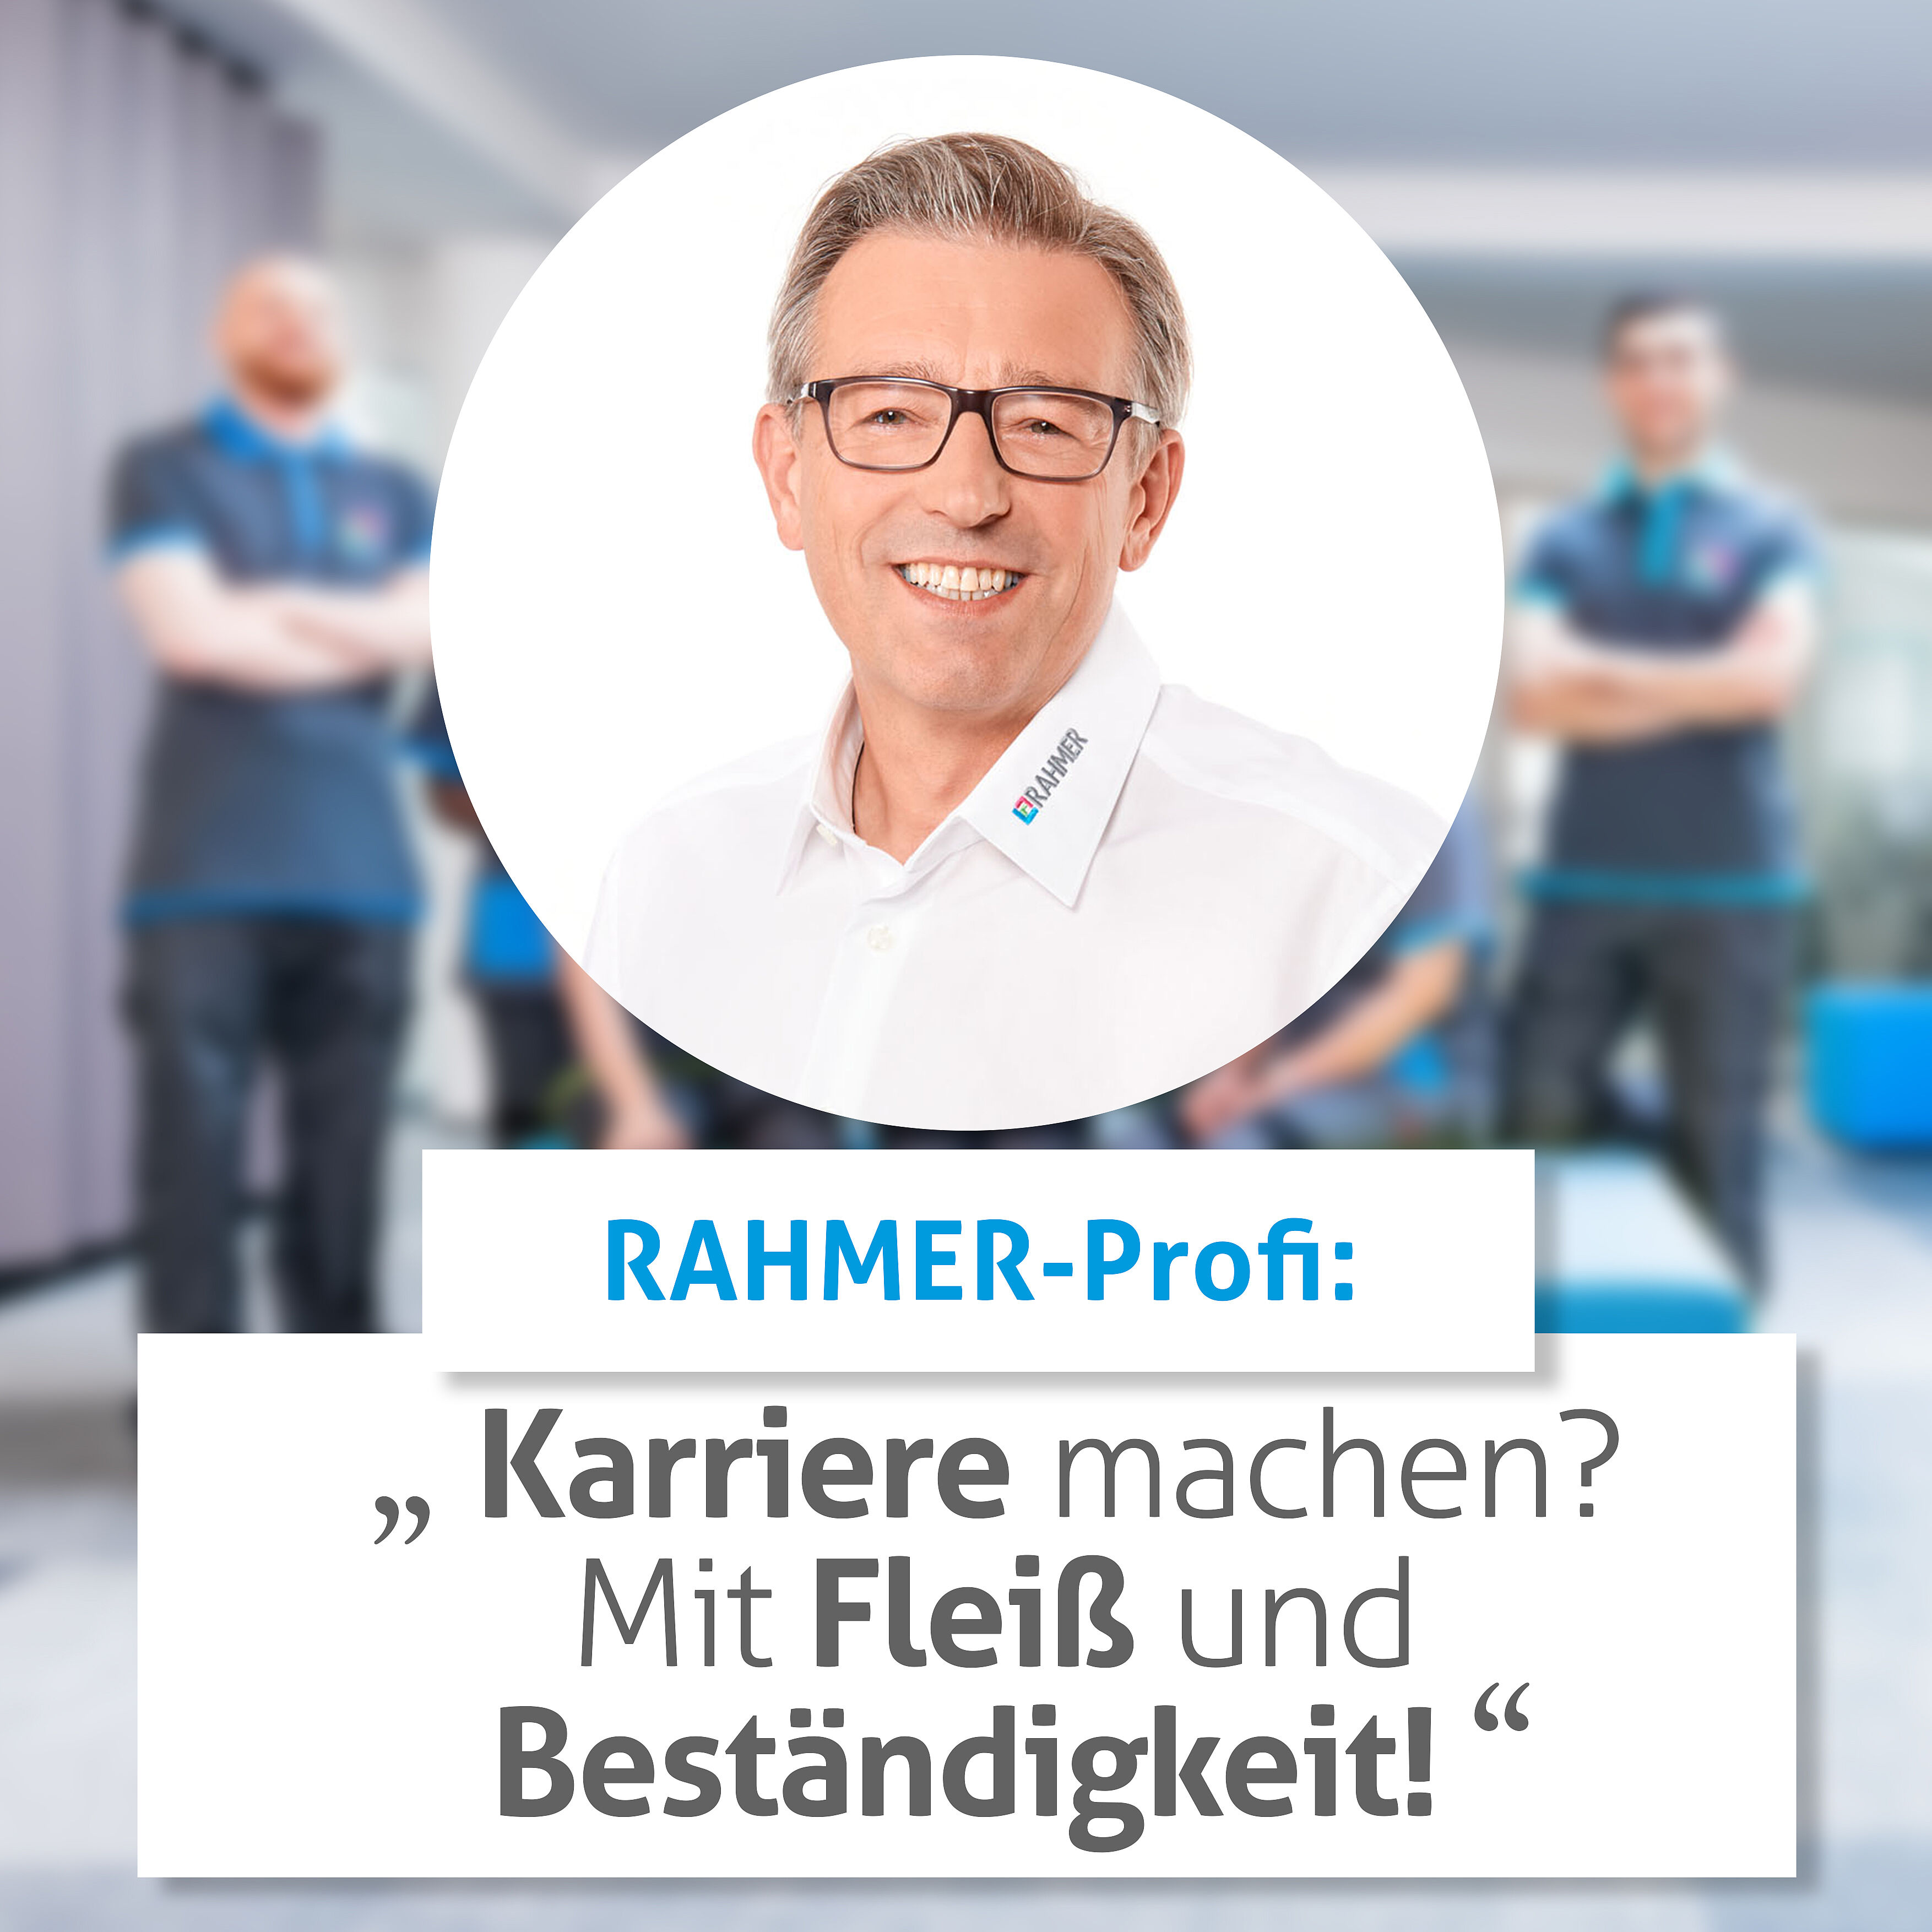 RAHMER-Experte gibt Karrieretipps für die Reinigungsbranche: "Fleiß und Beständigkeit!"